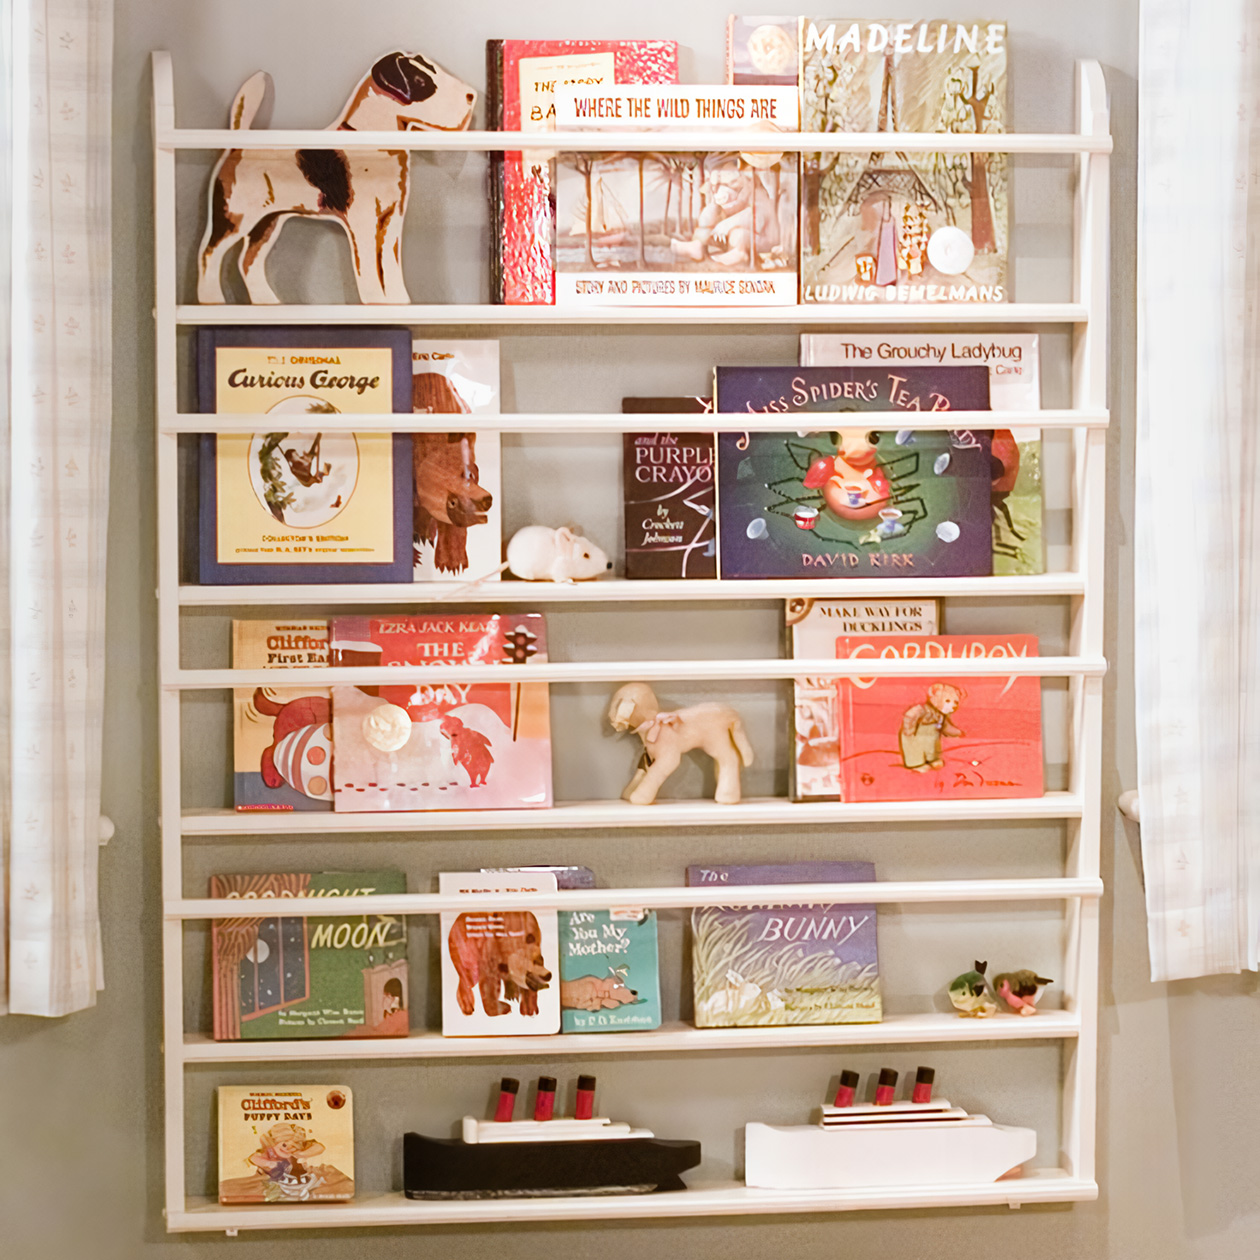 На такой полке книги становятся элементом декора и привлекают внимание наравне с игрушками. Фото: Martha Stewart / Pinterest